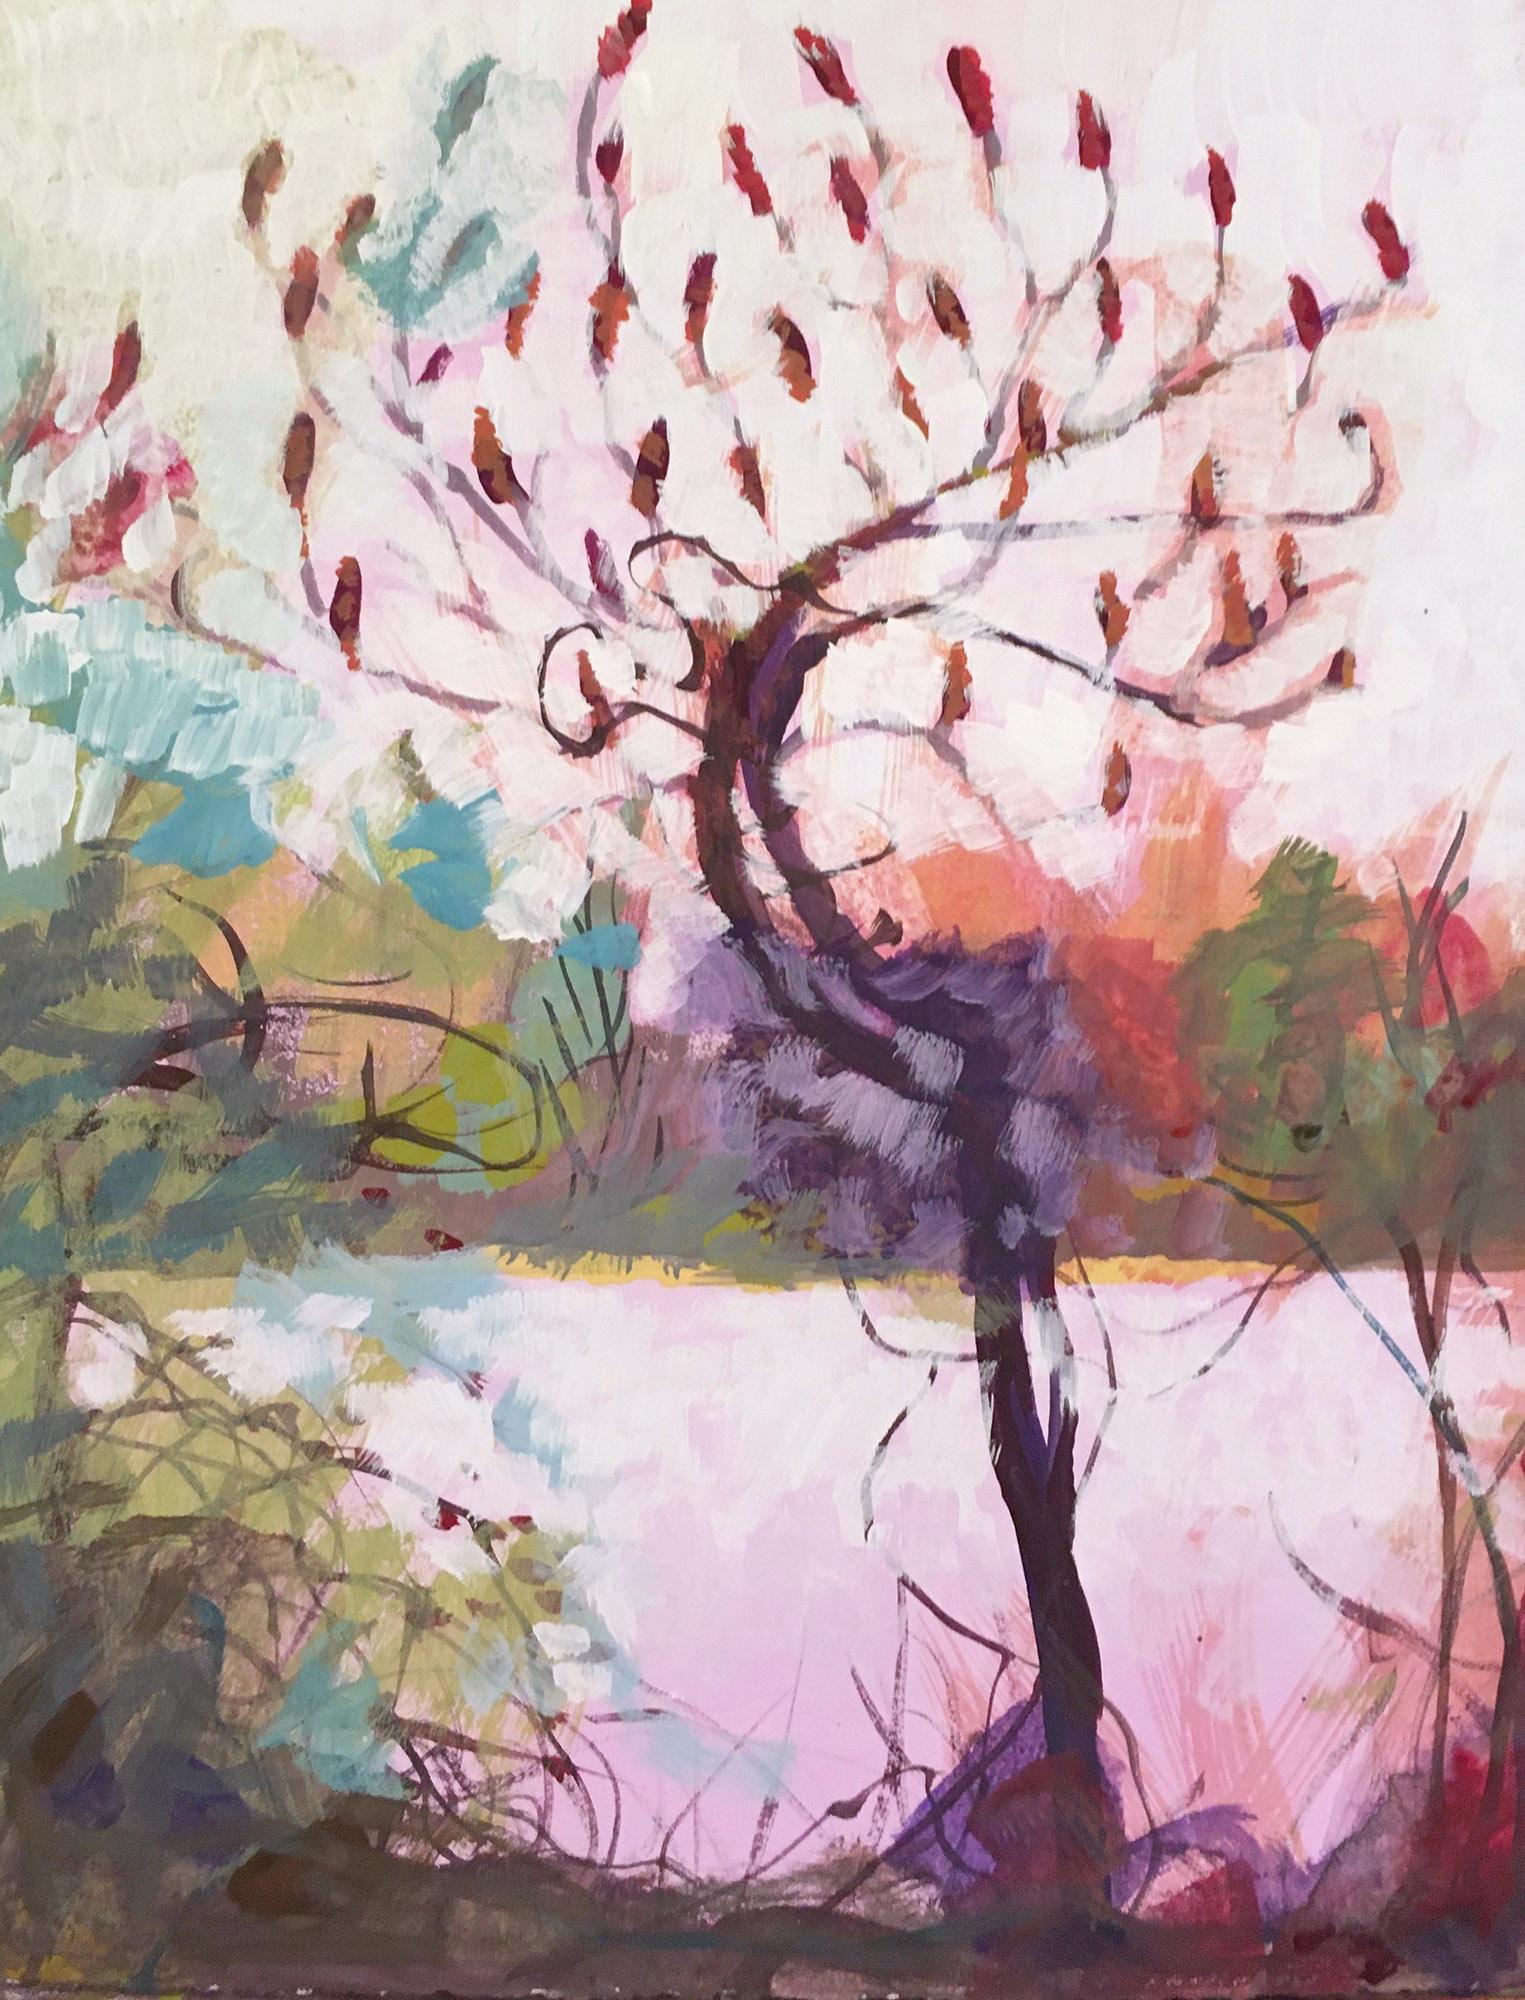 Sumac, farbenfrohe Landschafts Gouache im abstrakten Impressionismus